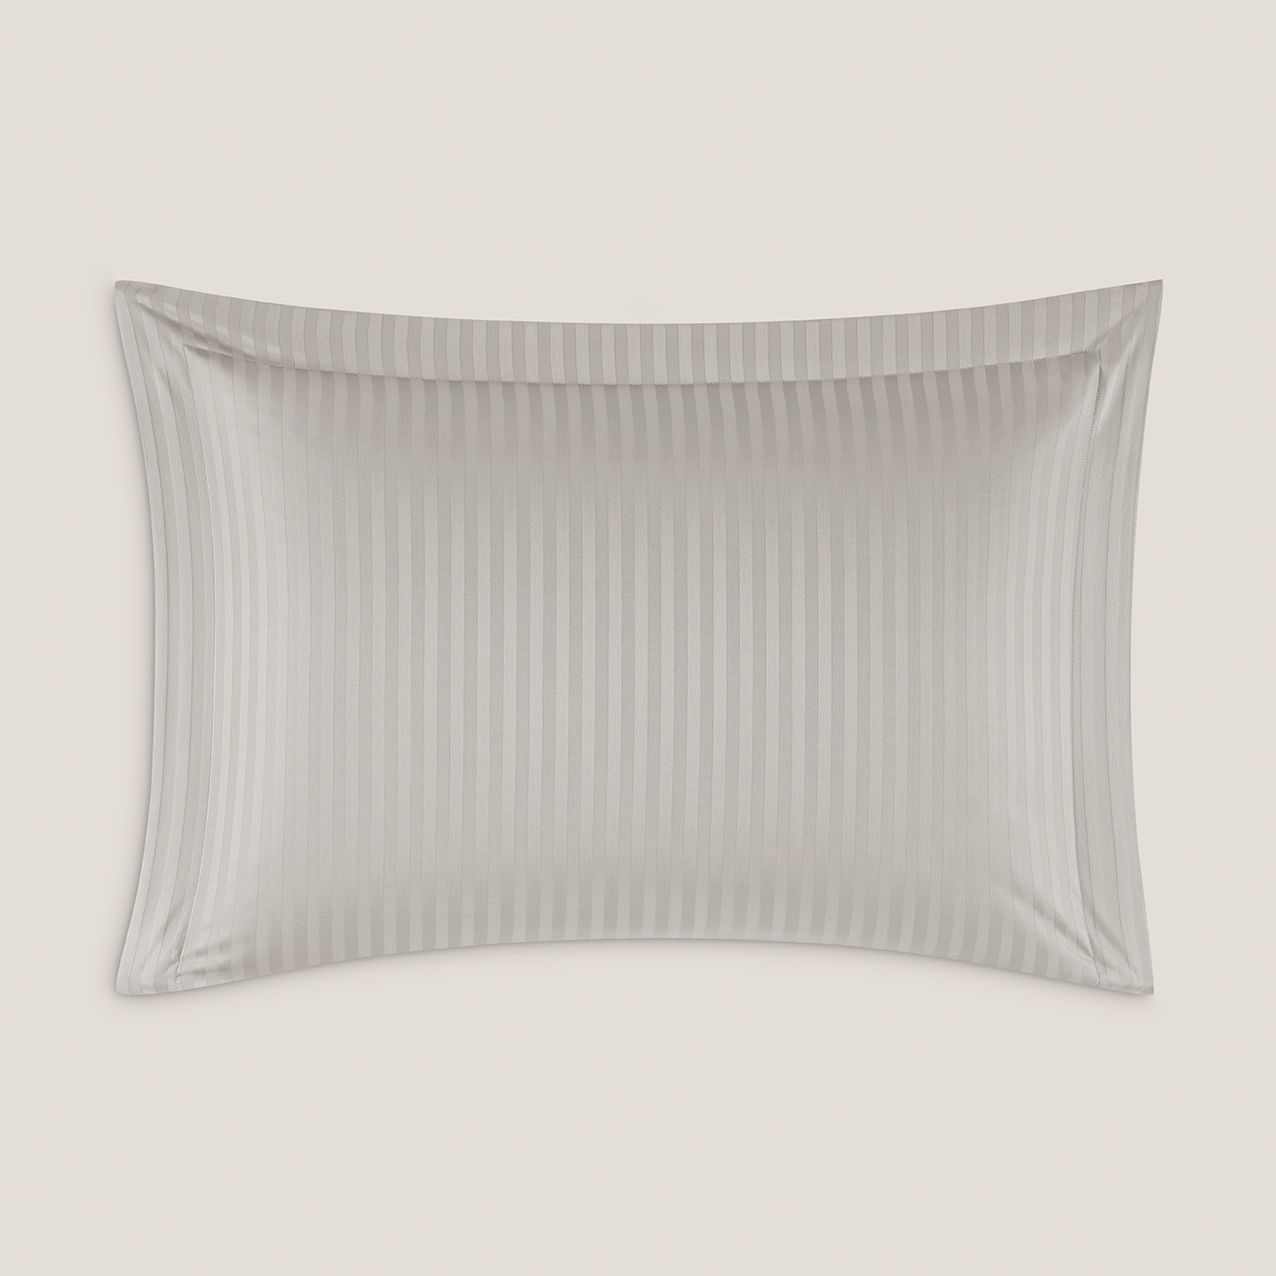 Комплект постельного белья Togas Ларье серый Двуспальный кинг сайз, размер Кинг сайз - фото 5